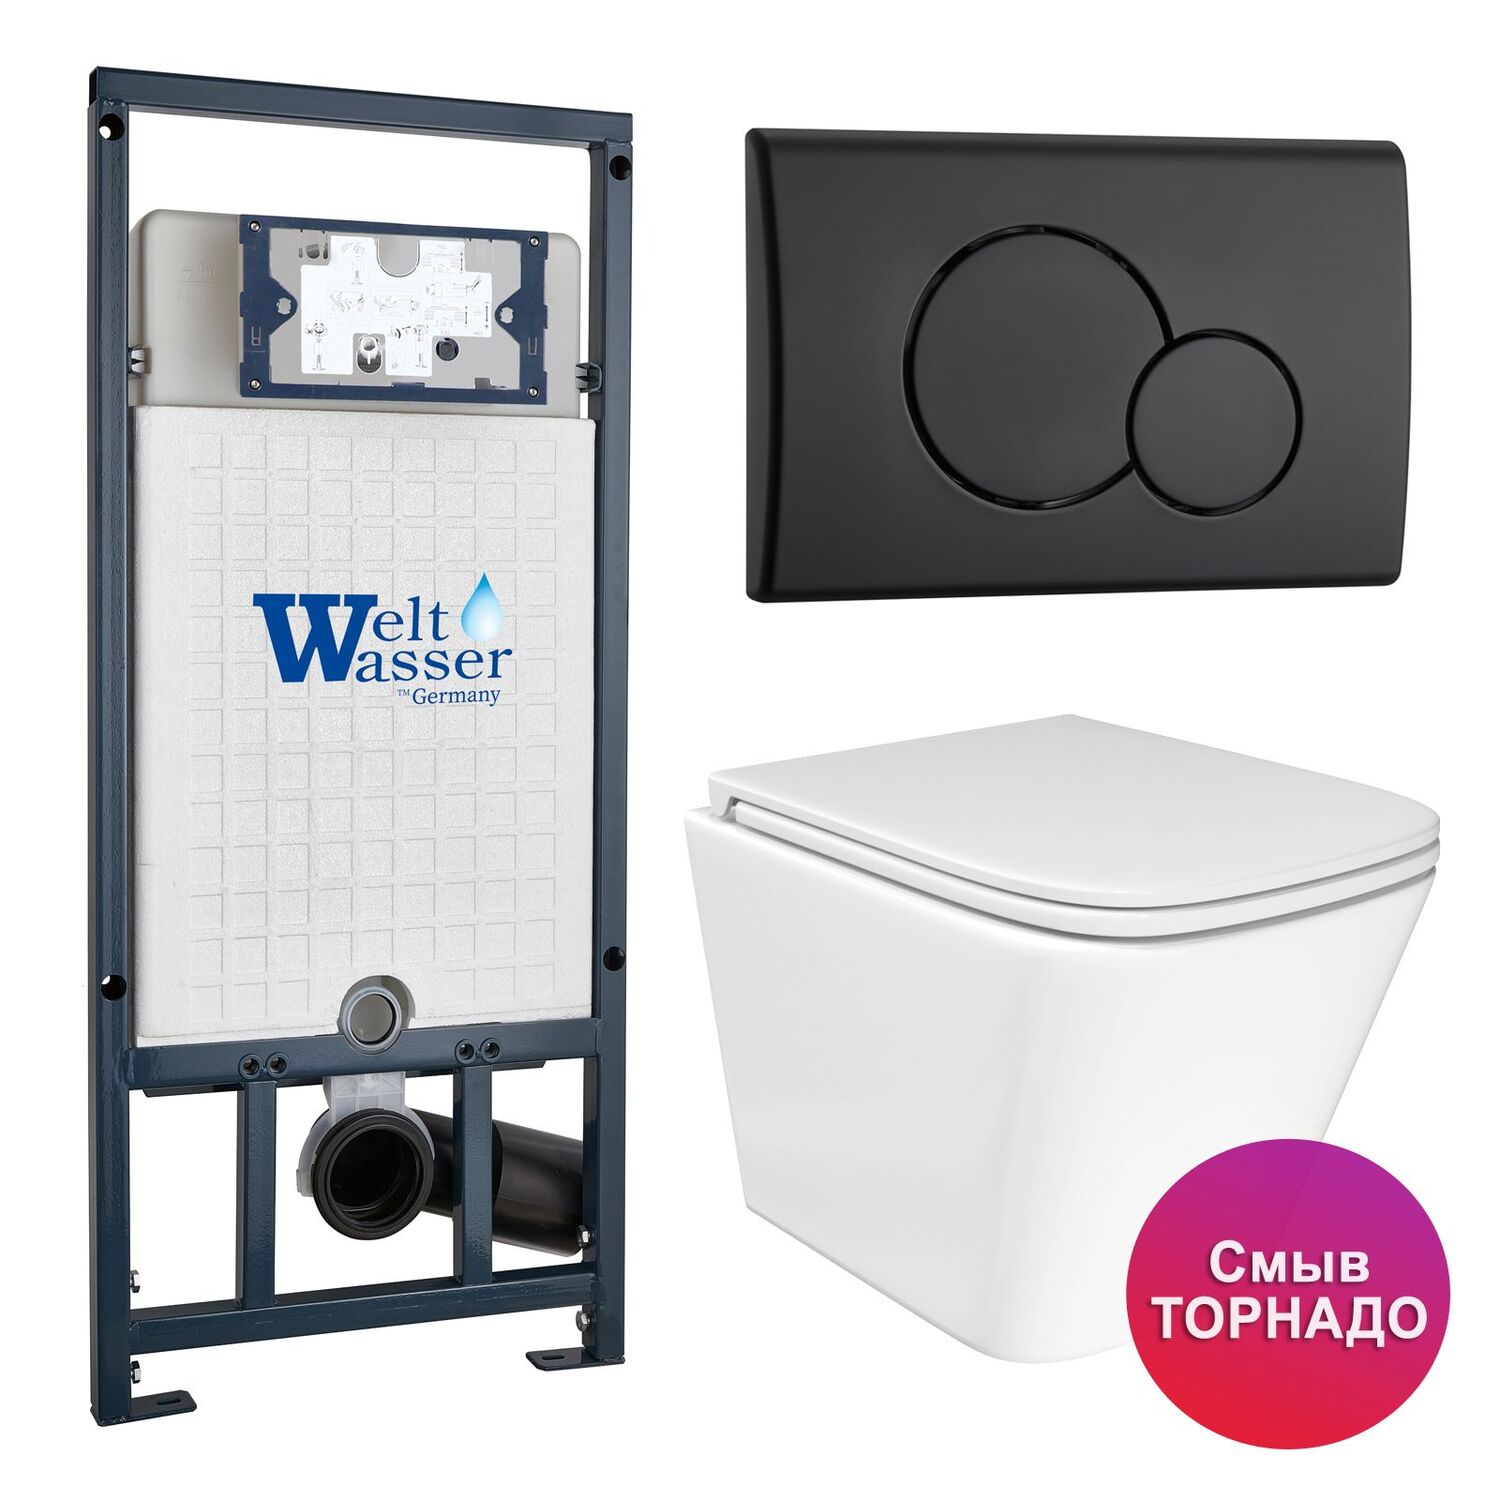 Комплект: Weltwasser Инсталляция Mar 507+Кнопка Mar 507 RD MT-BL черная+Verna T JK3031025 белый унитаз, смыв Торнадо